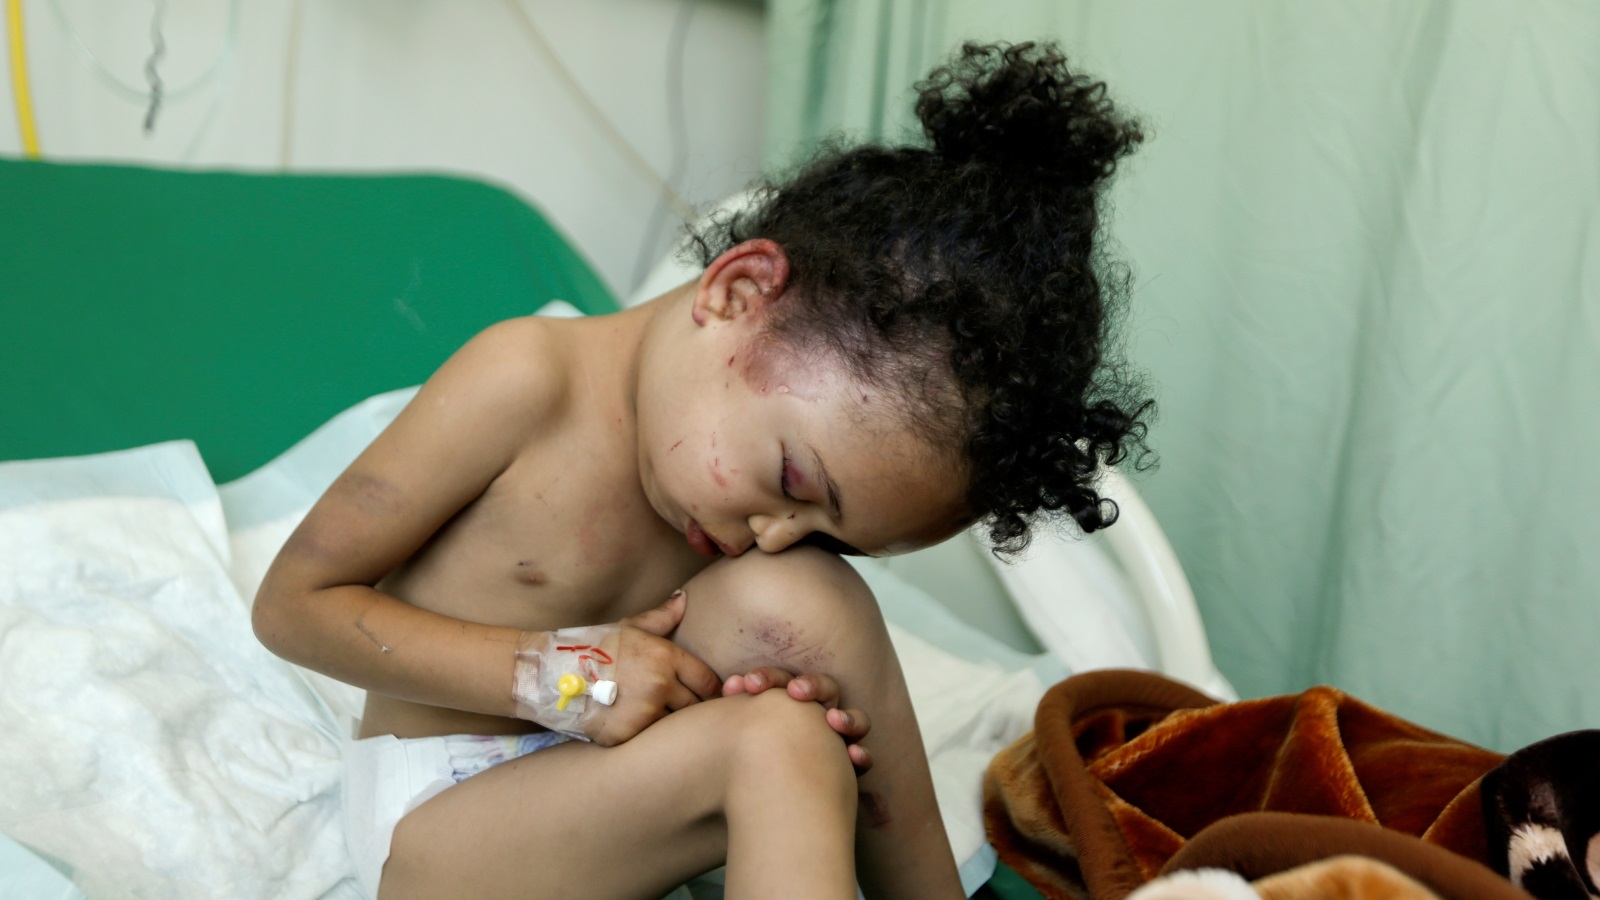 ‪بثينة بعد تعرض منزلها في صنعاء للقصف يوم 26 من أغسطس/آب ومقتل ثمانية من العائلة‬ بثينة بعد تعرض منزلها في صنعاء للقصف يوم 26 من أغسطس/آب ومقتل ثمانية من العائلة (رويترز)